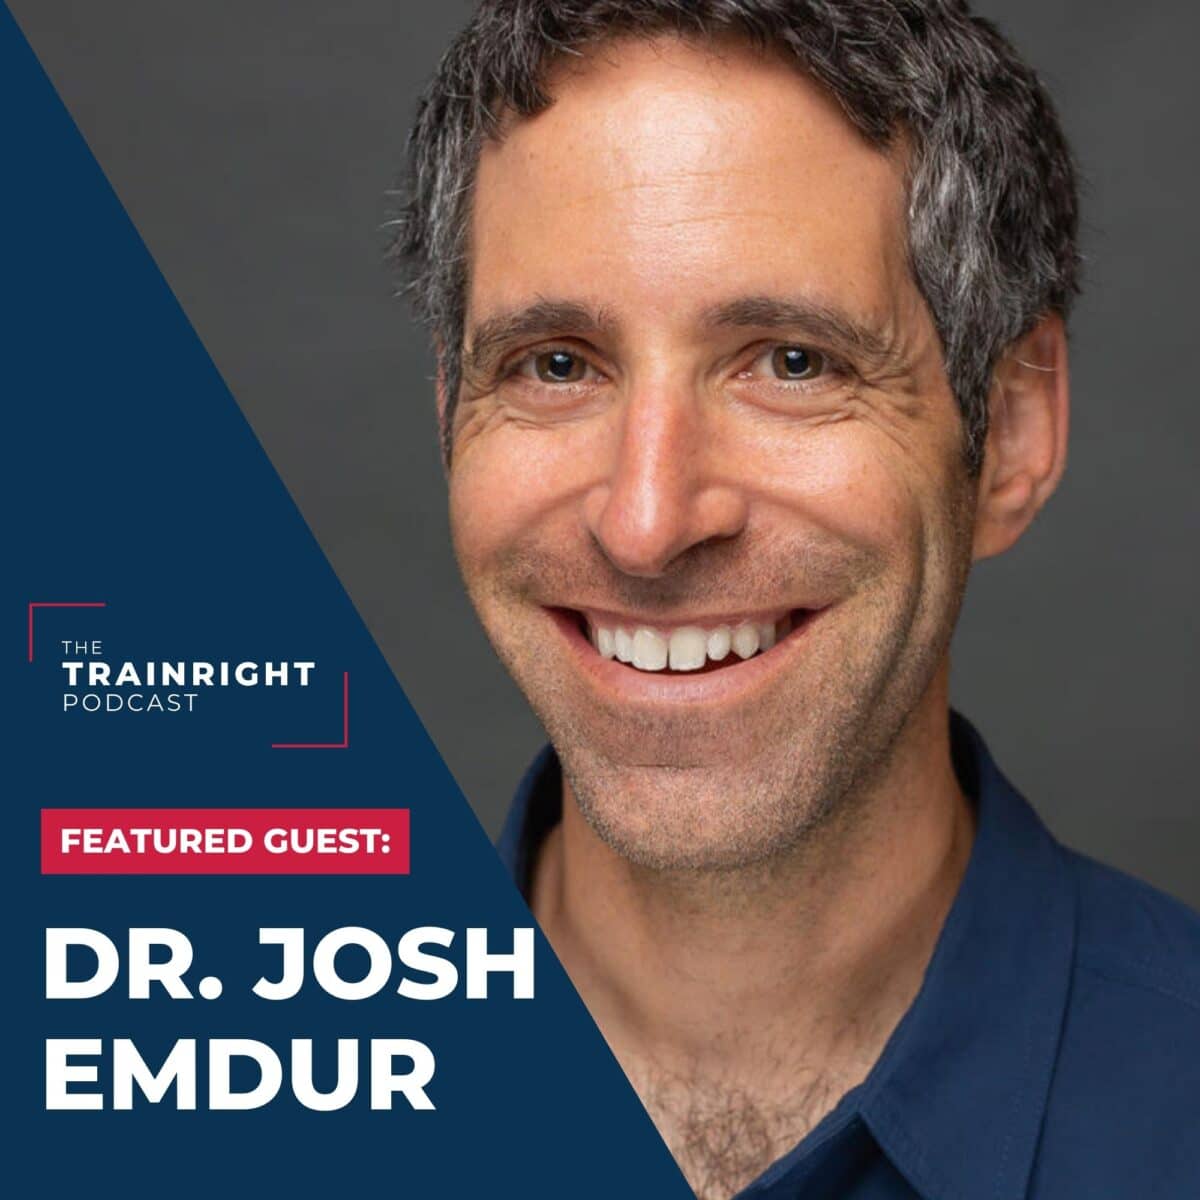 Dr. Josh Emdur